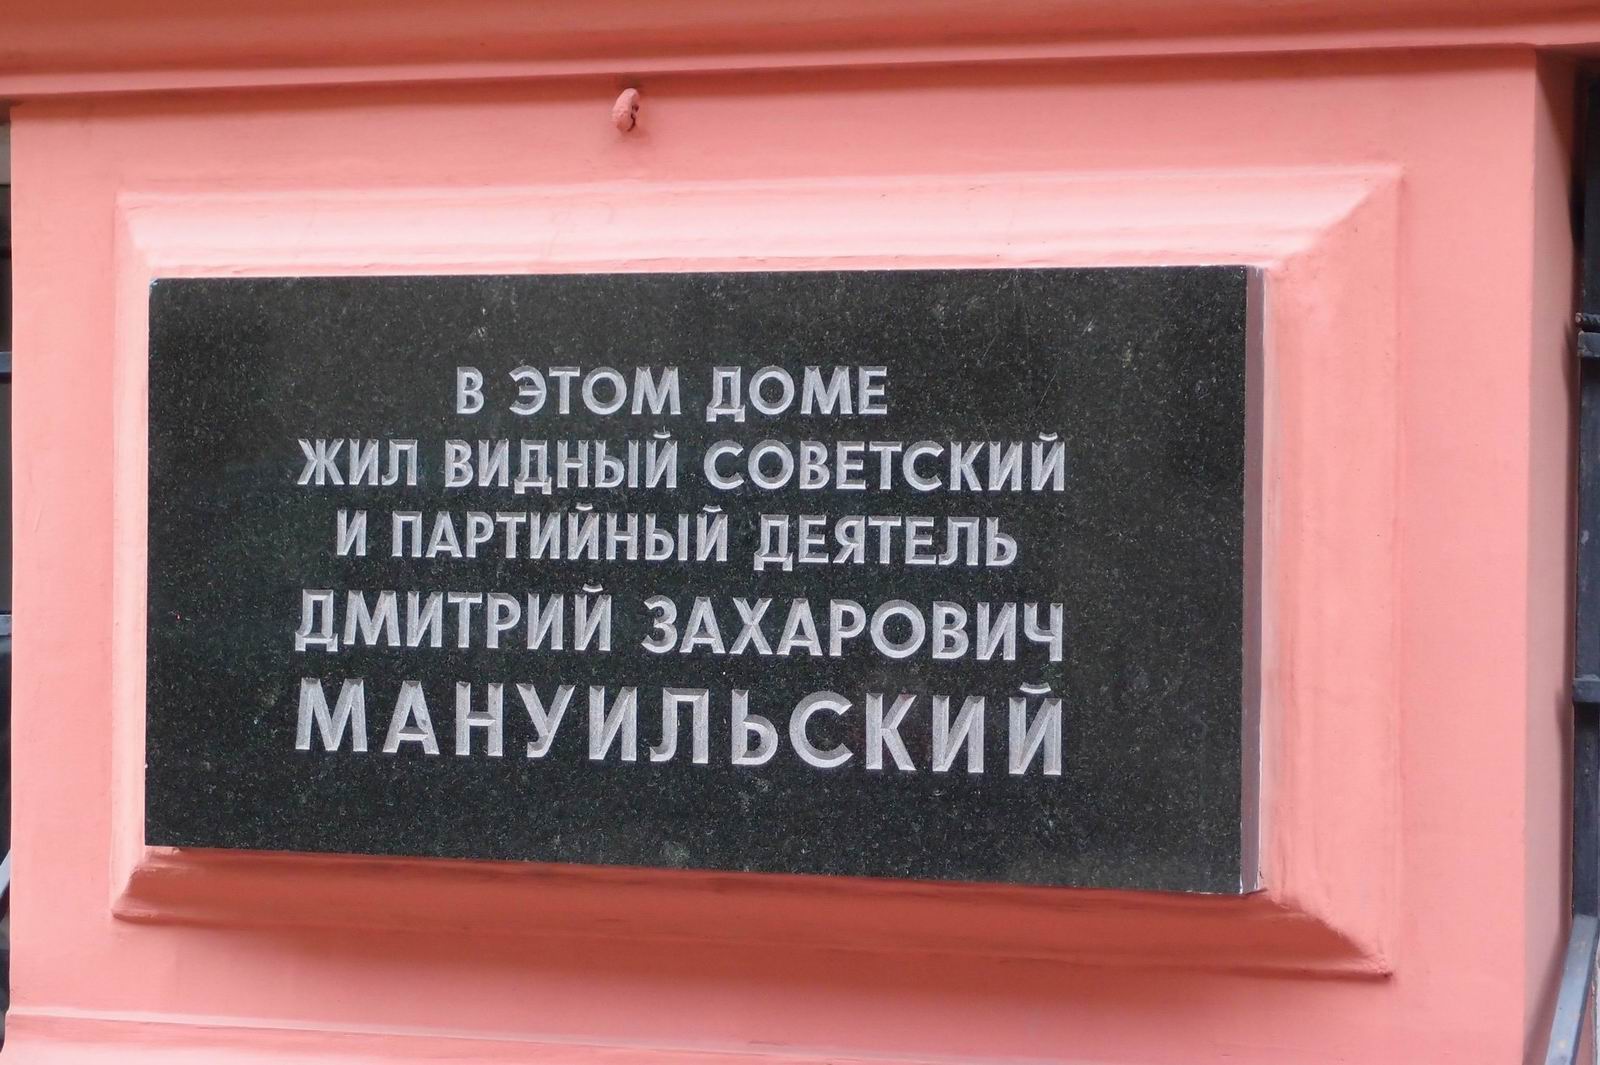 Мемориальная доска Мануильскому Д.З. (1883–1959), арх. М.В.Поспелов, в Романовом переулке, дом 3, открыта 17.2.1987.